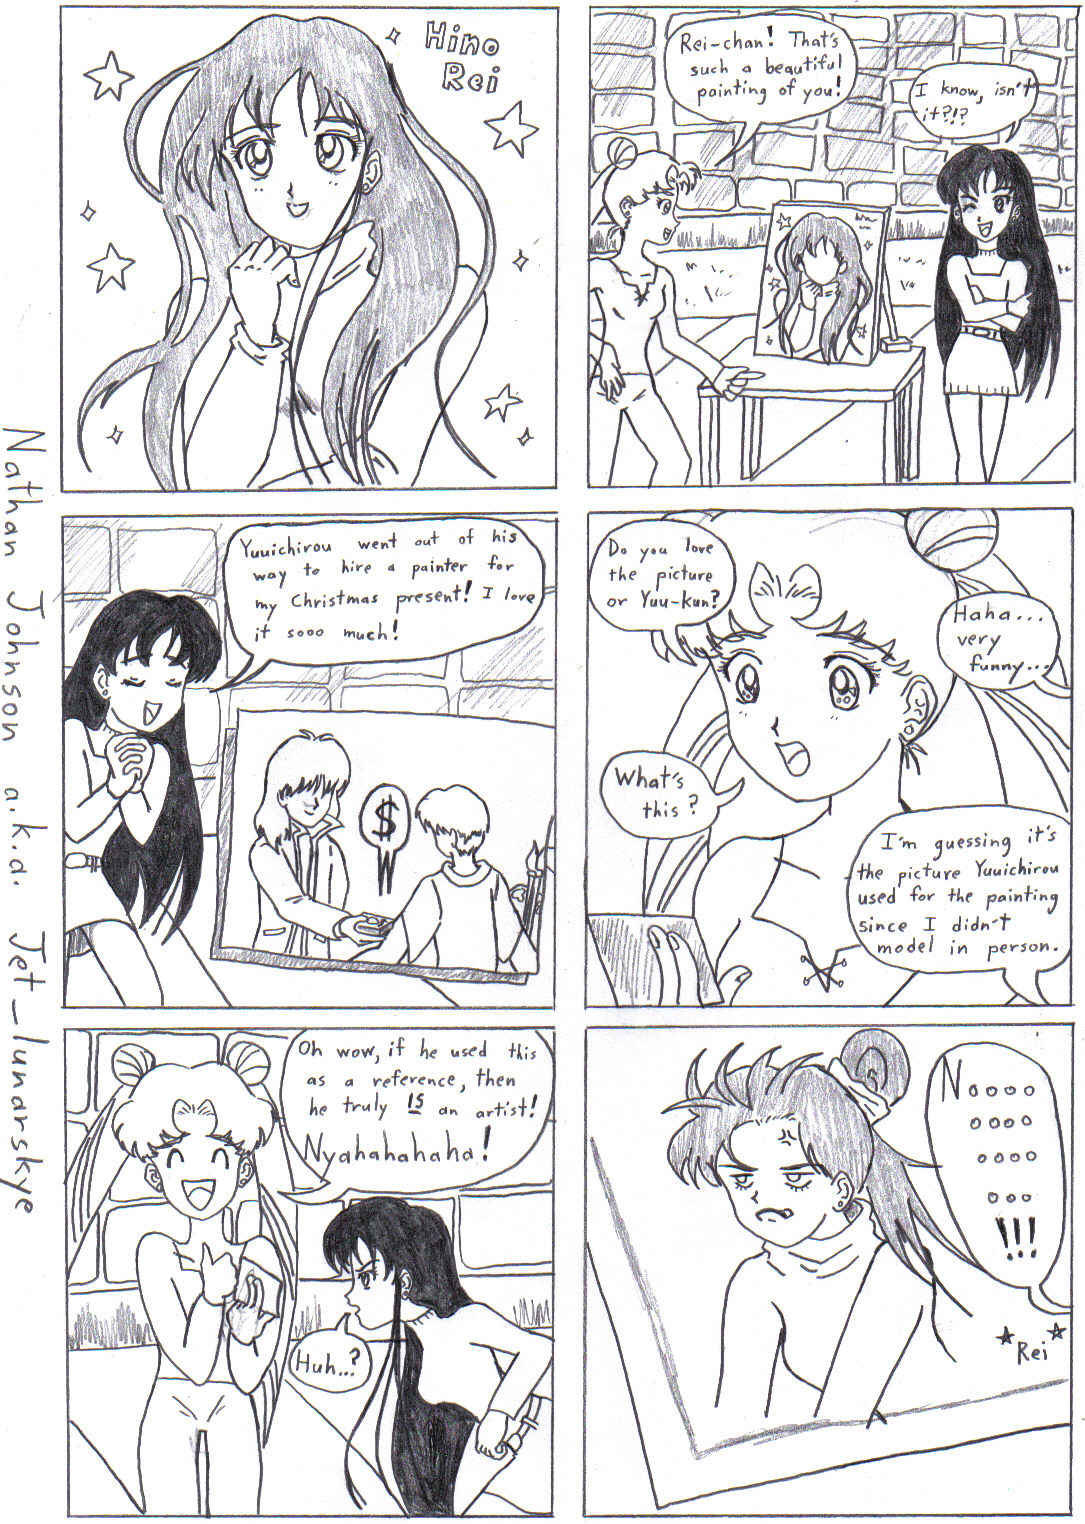 Hikawa Shrine Antics: Page 3 by Jet_lunarskye